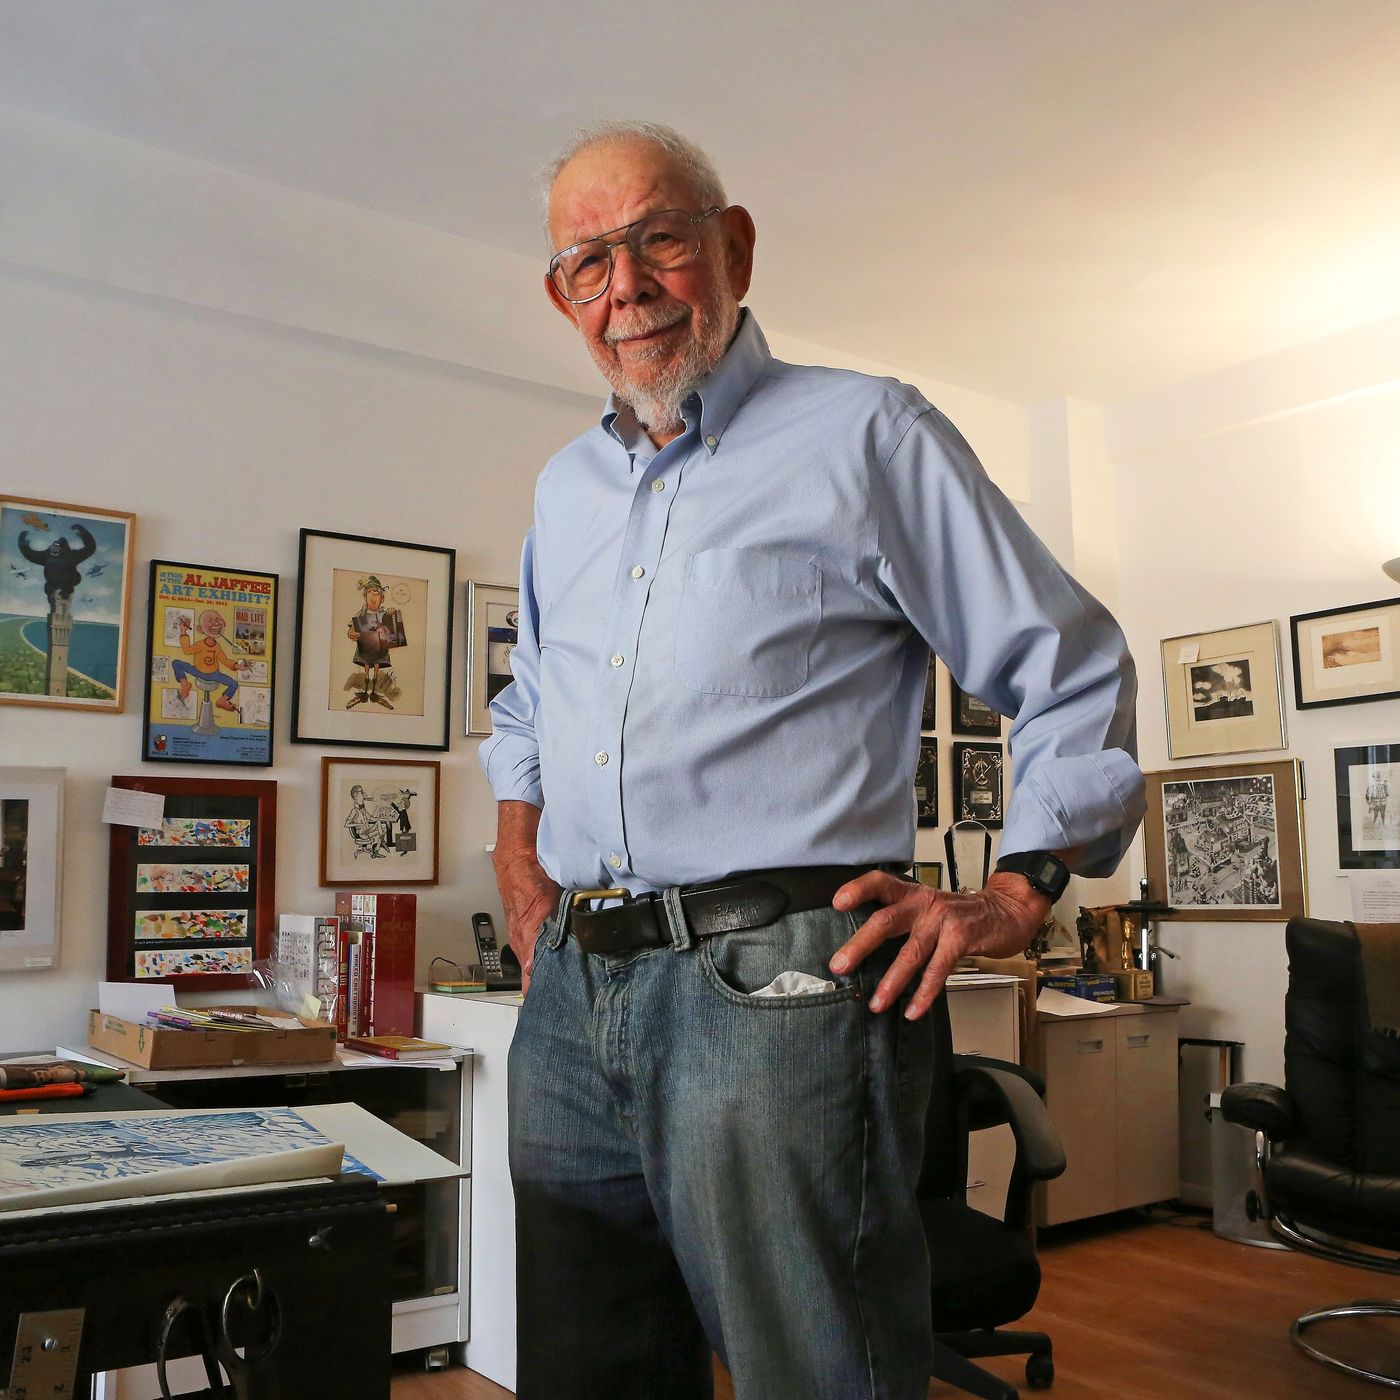 RIP, Al Jaffee, legendary, longtime cartoonist for @Mad.Magazine